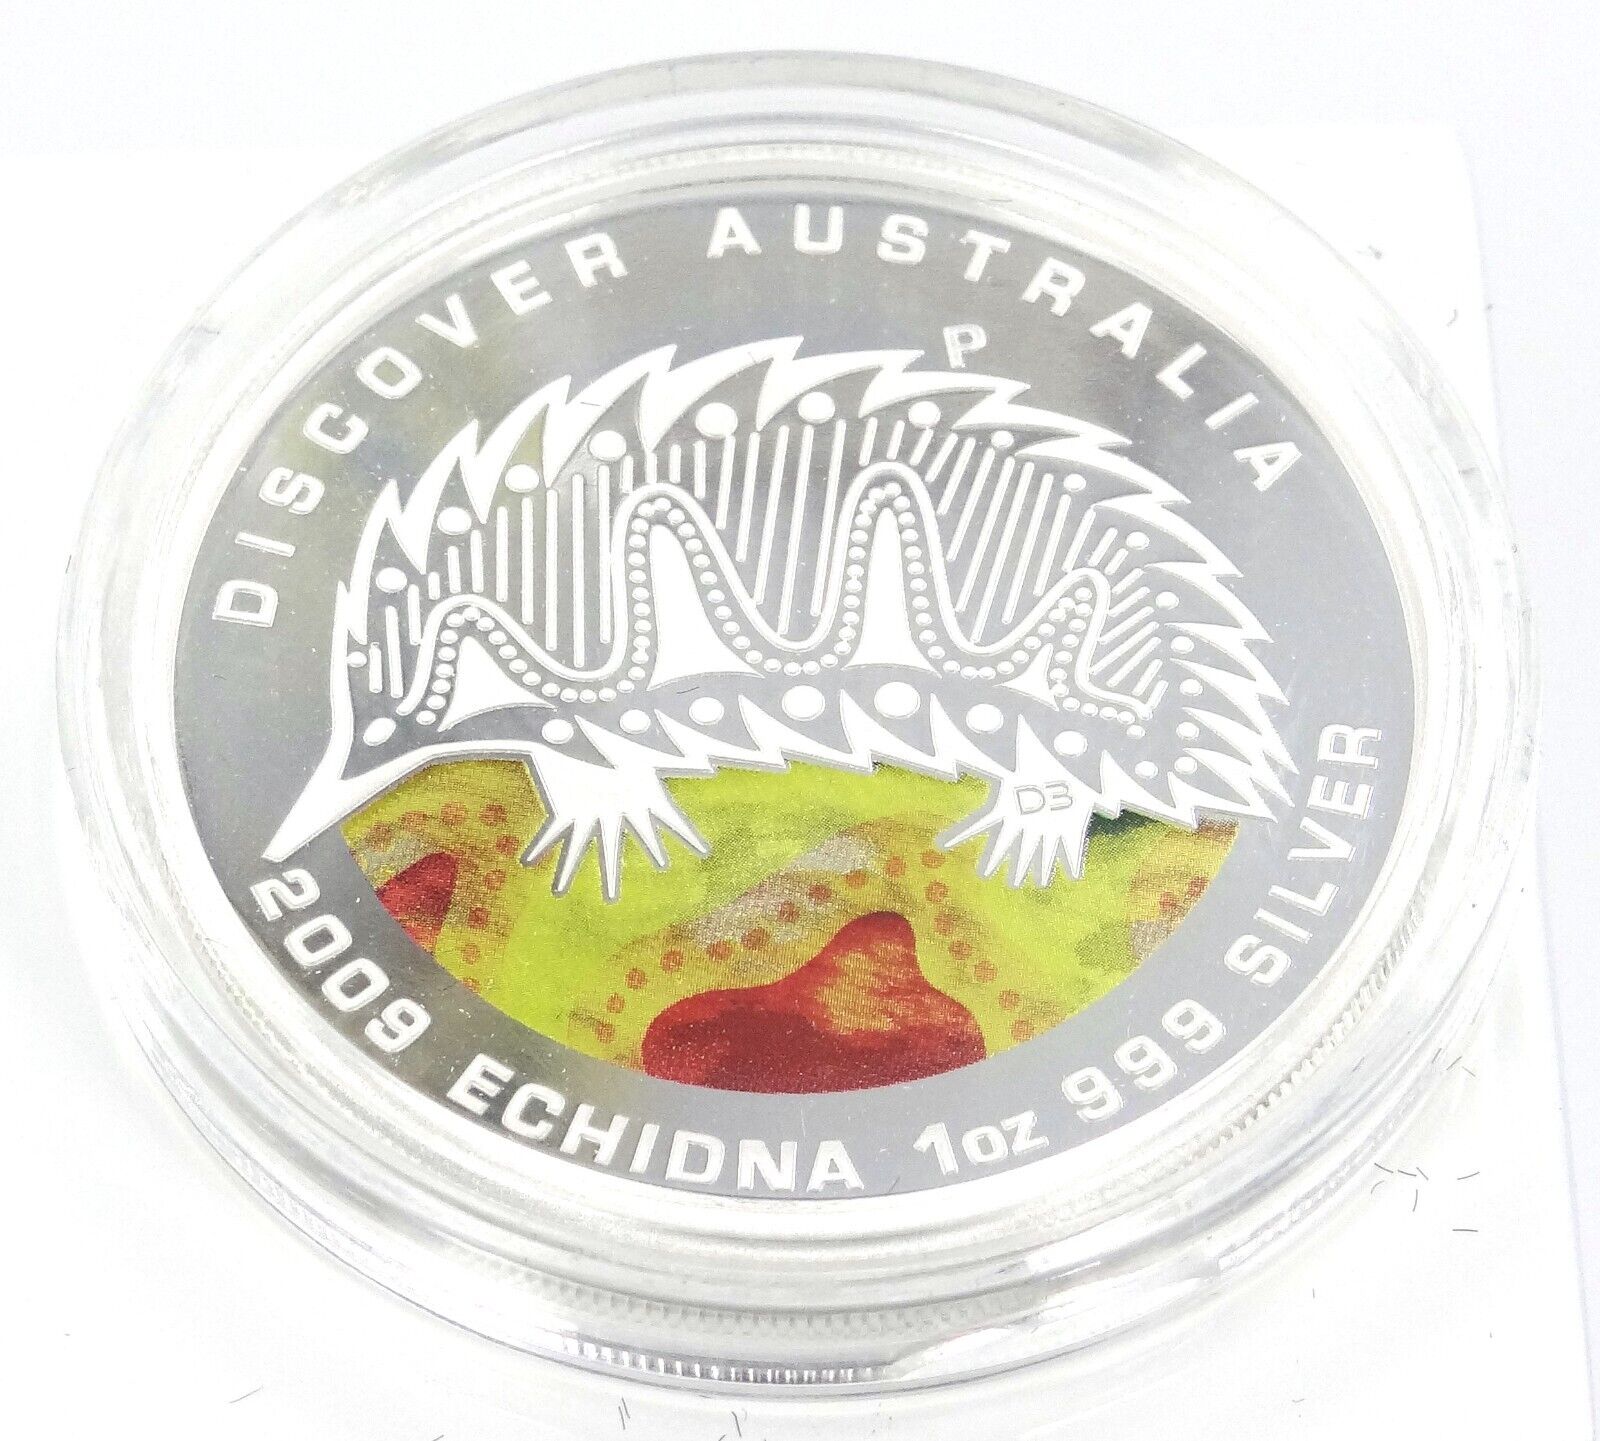 1 Oz Silver Coin 2009 $1 Australia Discover Australia Proof Coin - Echidna-classypw.com-1